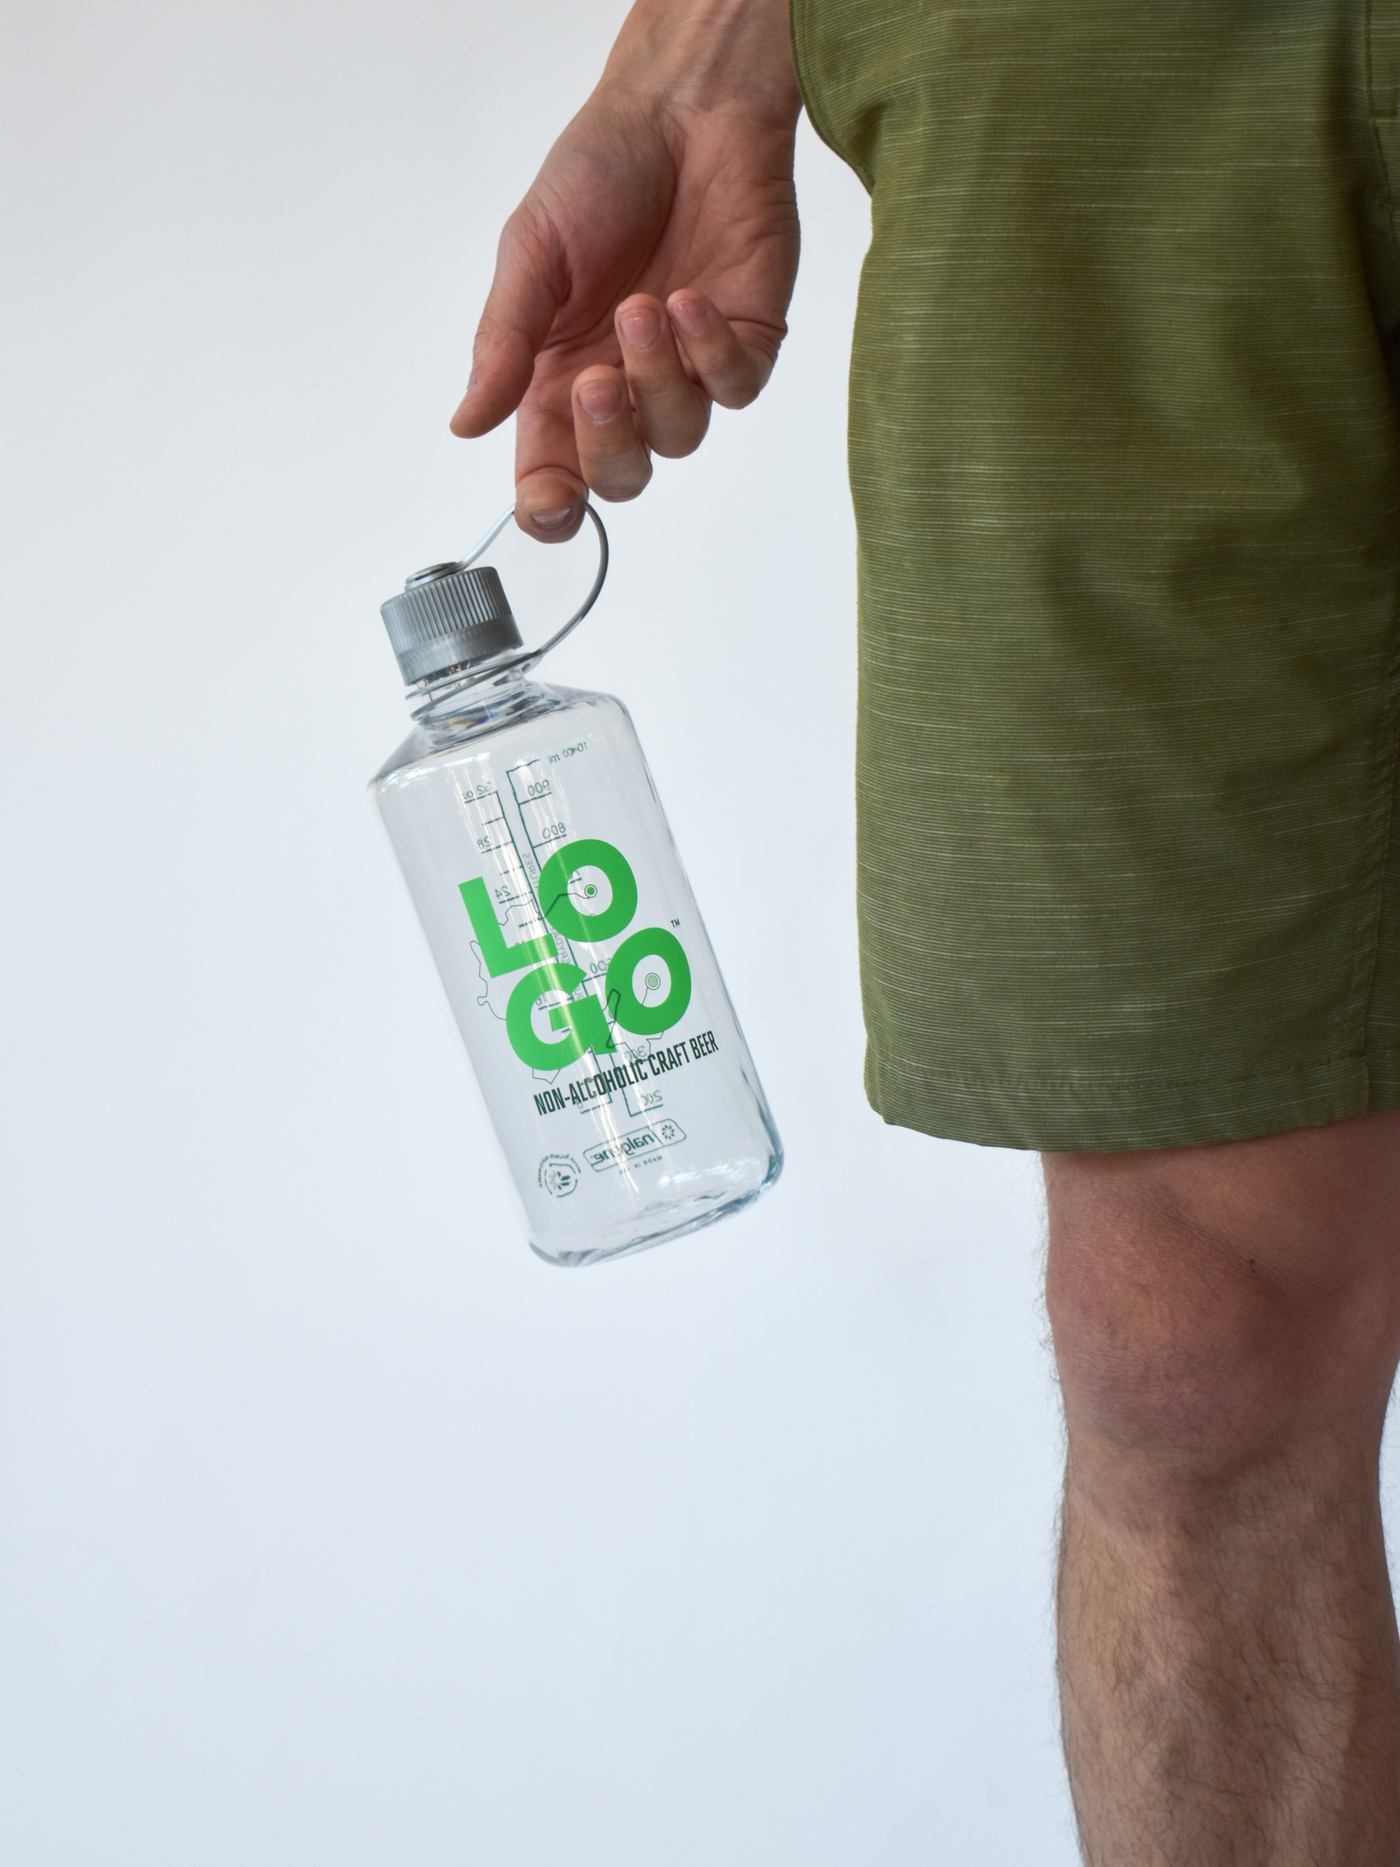 LOGO™ Nalgene Bottle